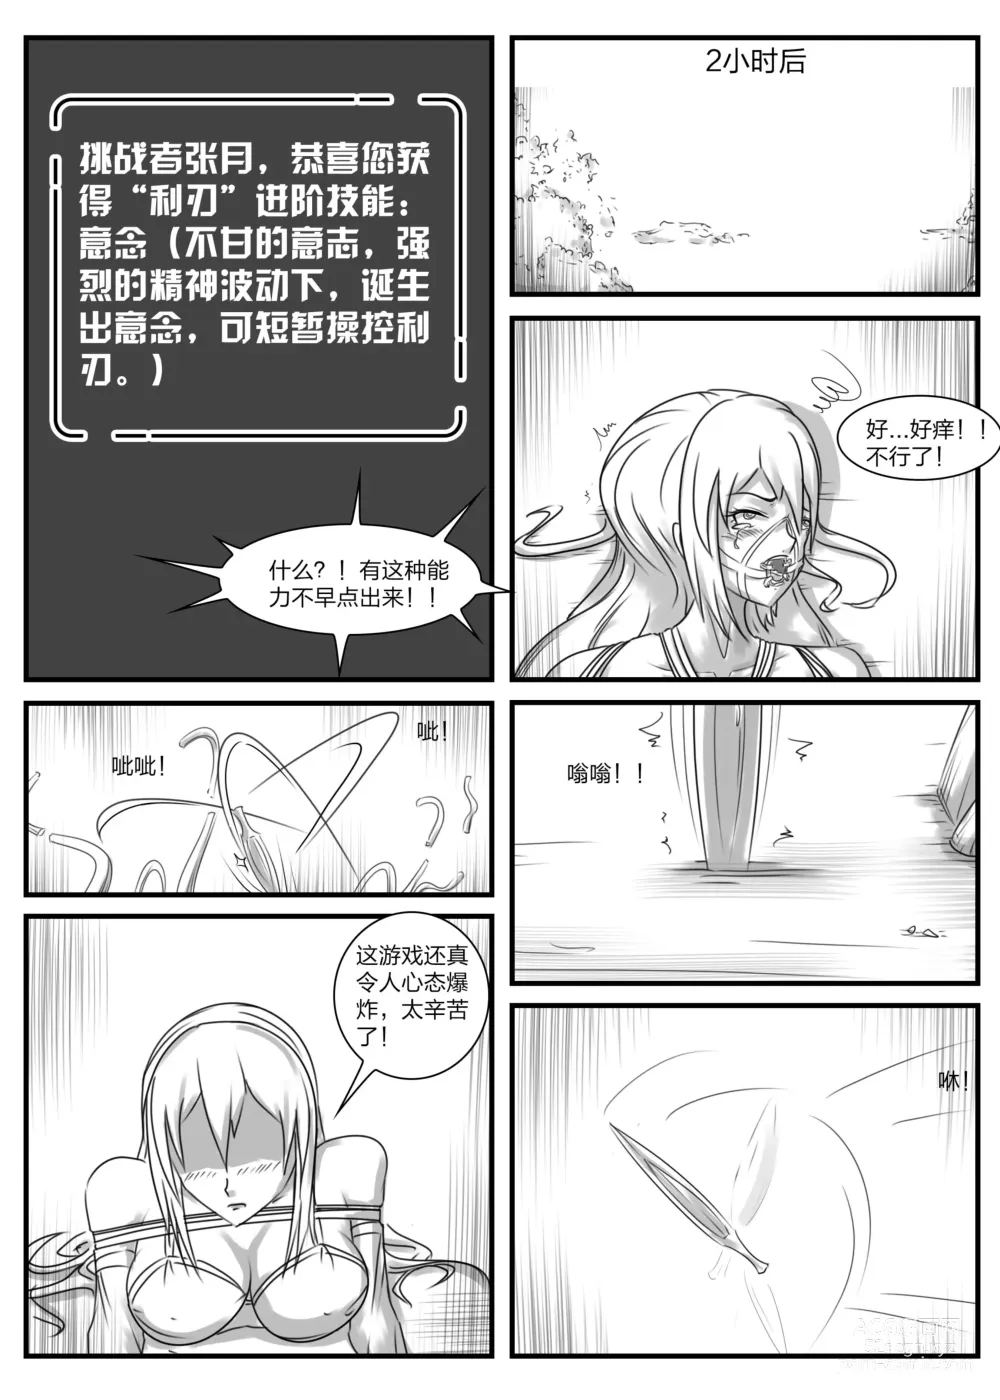 Page 14 of doujinshi 《被困游戏世界2》